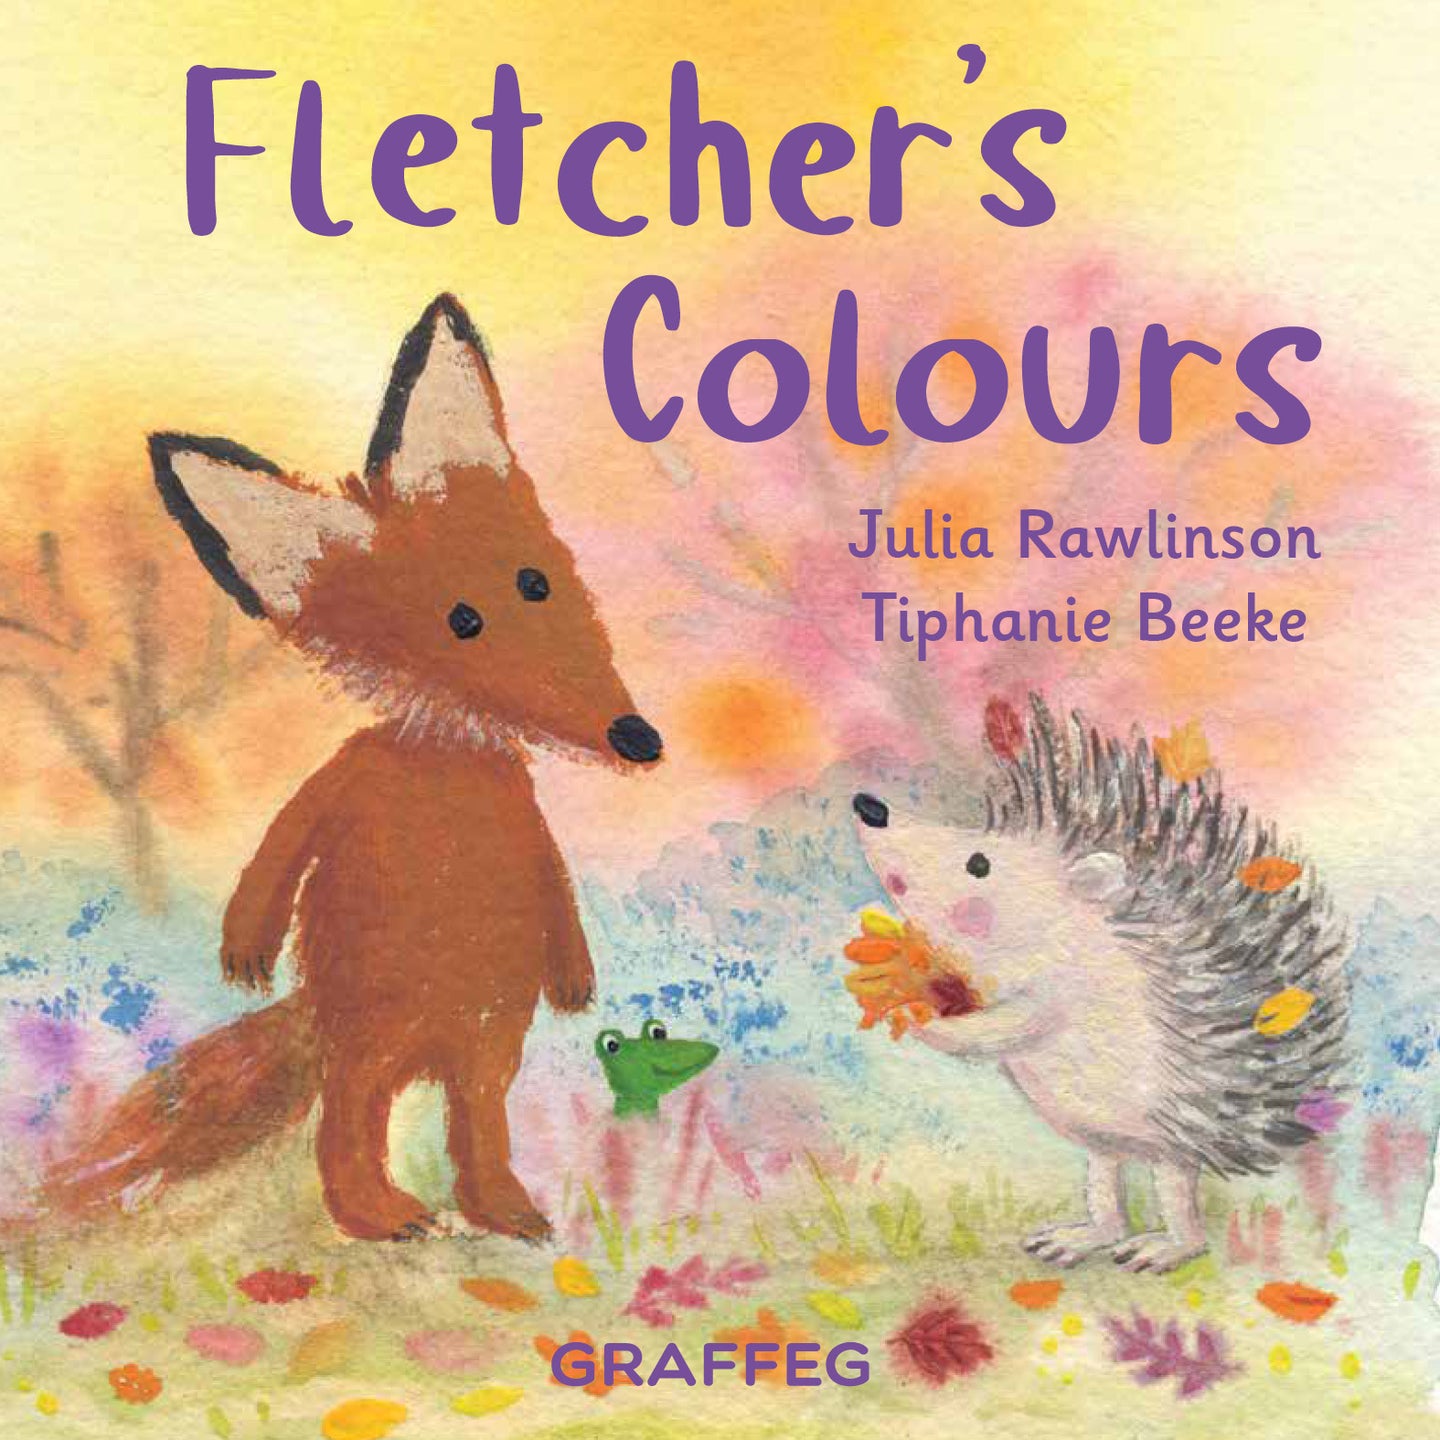 Fletcher's Colours